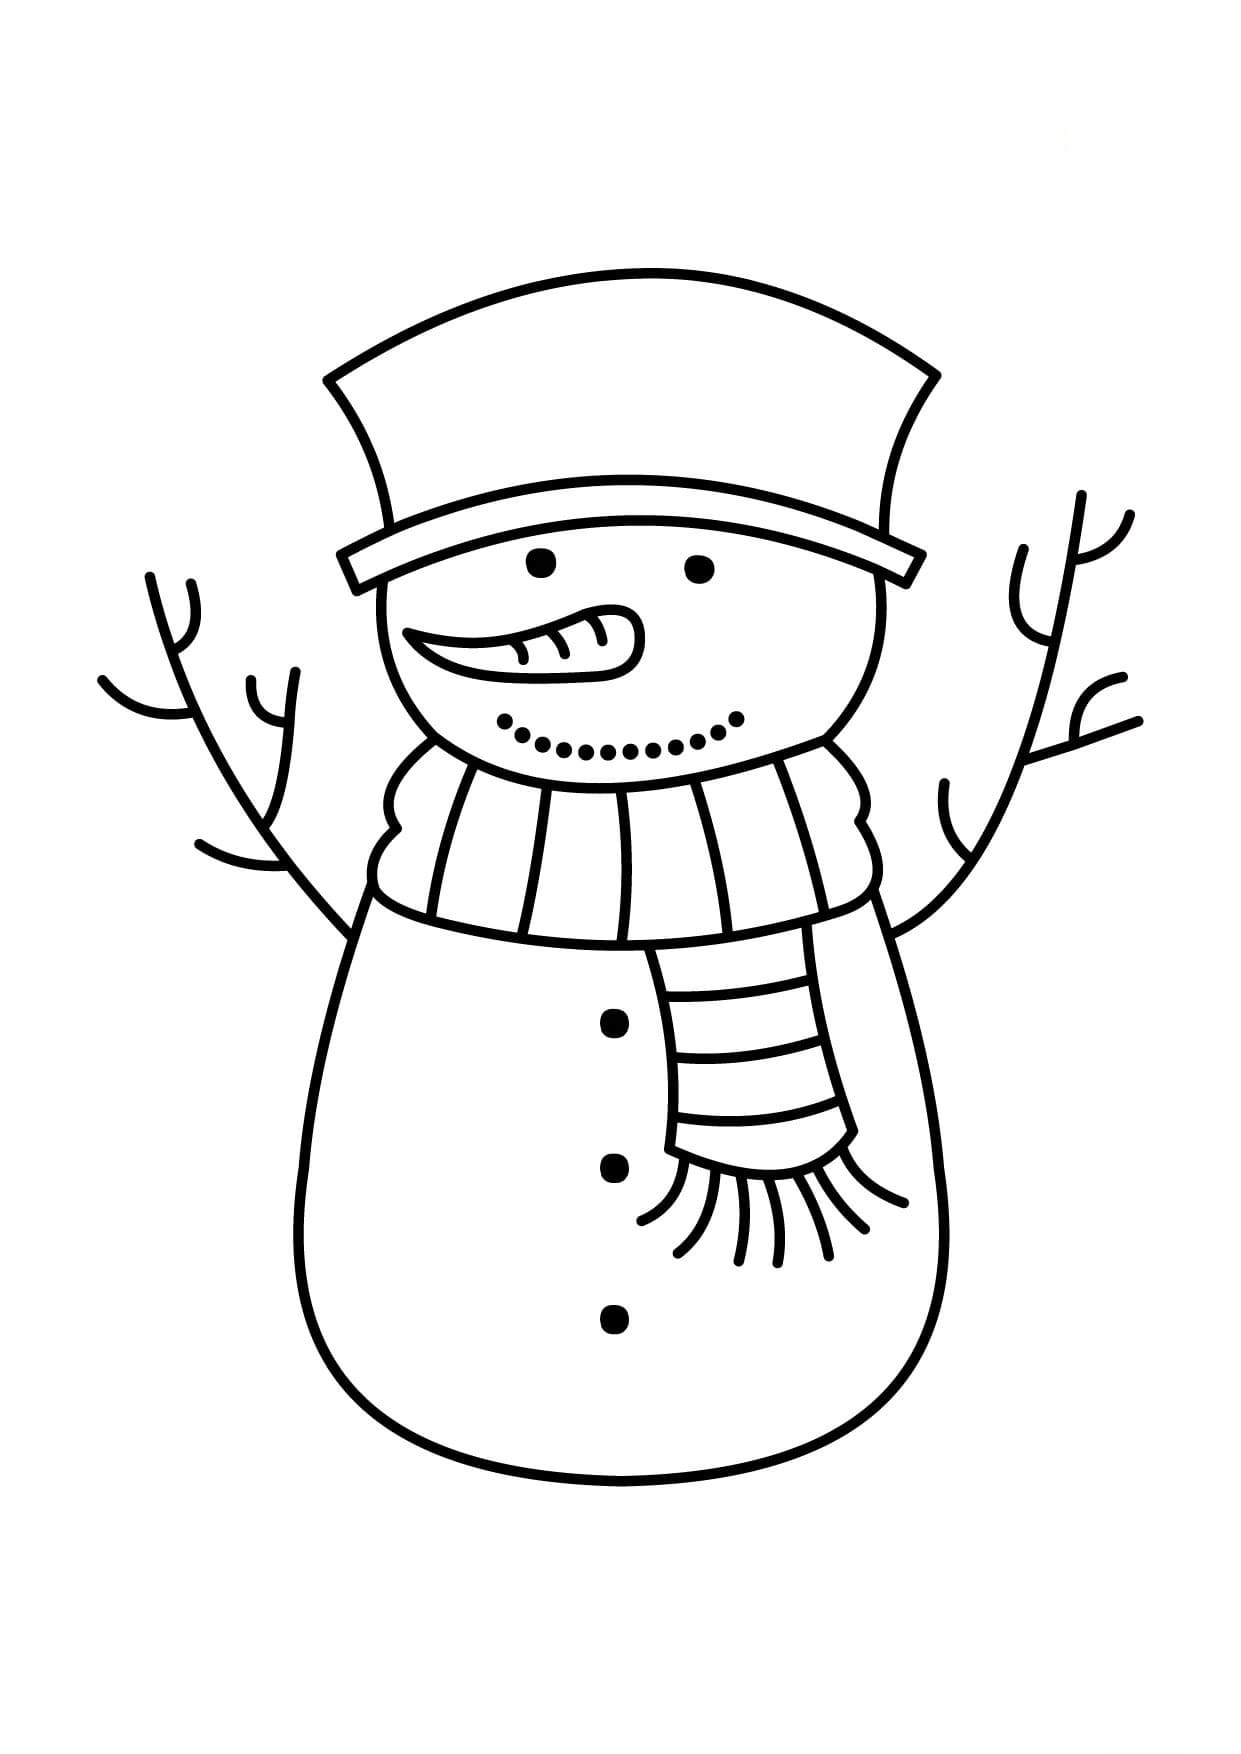 Раскраски Снеговик для детей. Распечатать беплатно